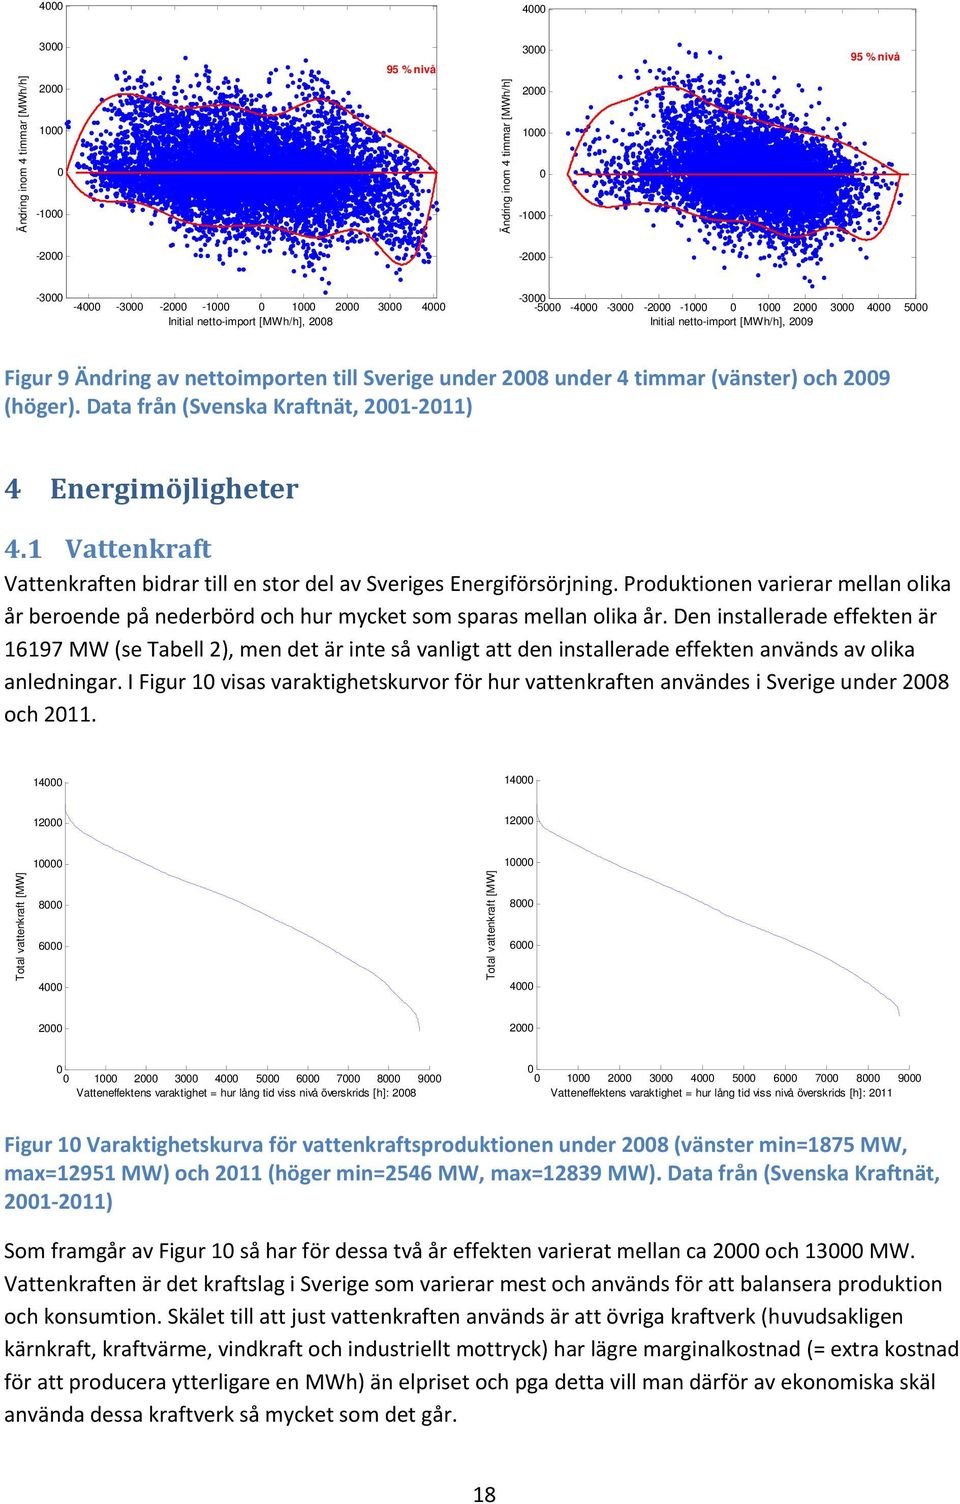 1 Vattenkraft Vattenkraften bidrar till en stor del av Sveriges Energiförsörjning. Produktionen varierar mellan olika år beroende på nederbörd och hur mycket som sparas mellan olika år.